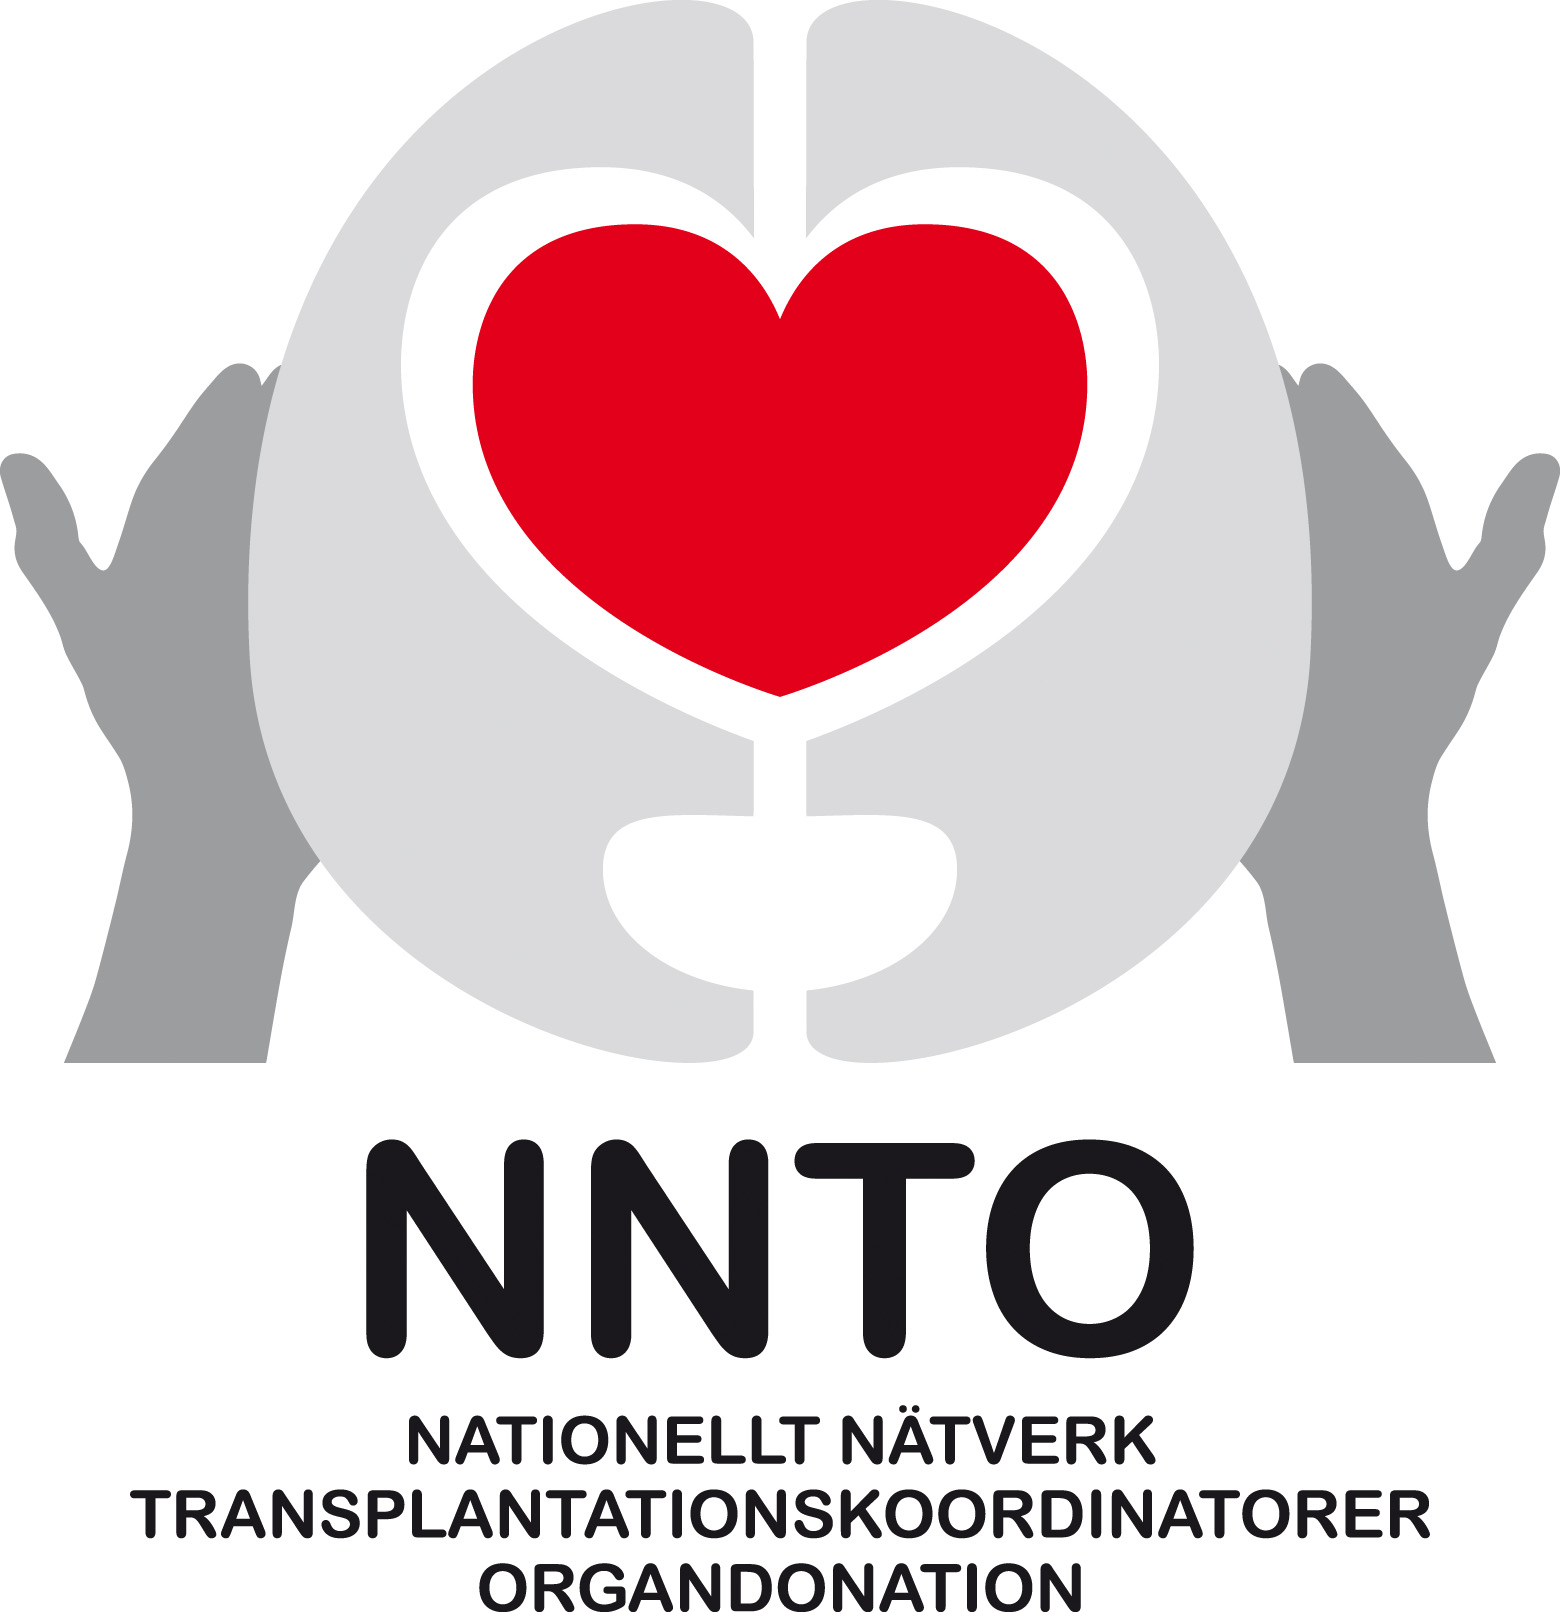 Nationellt nätverk transplantationsskoordinatorer organdonation